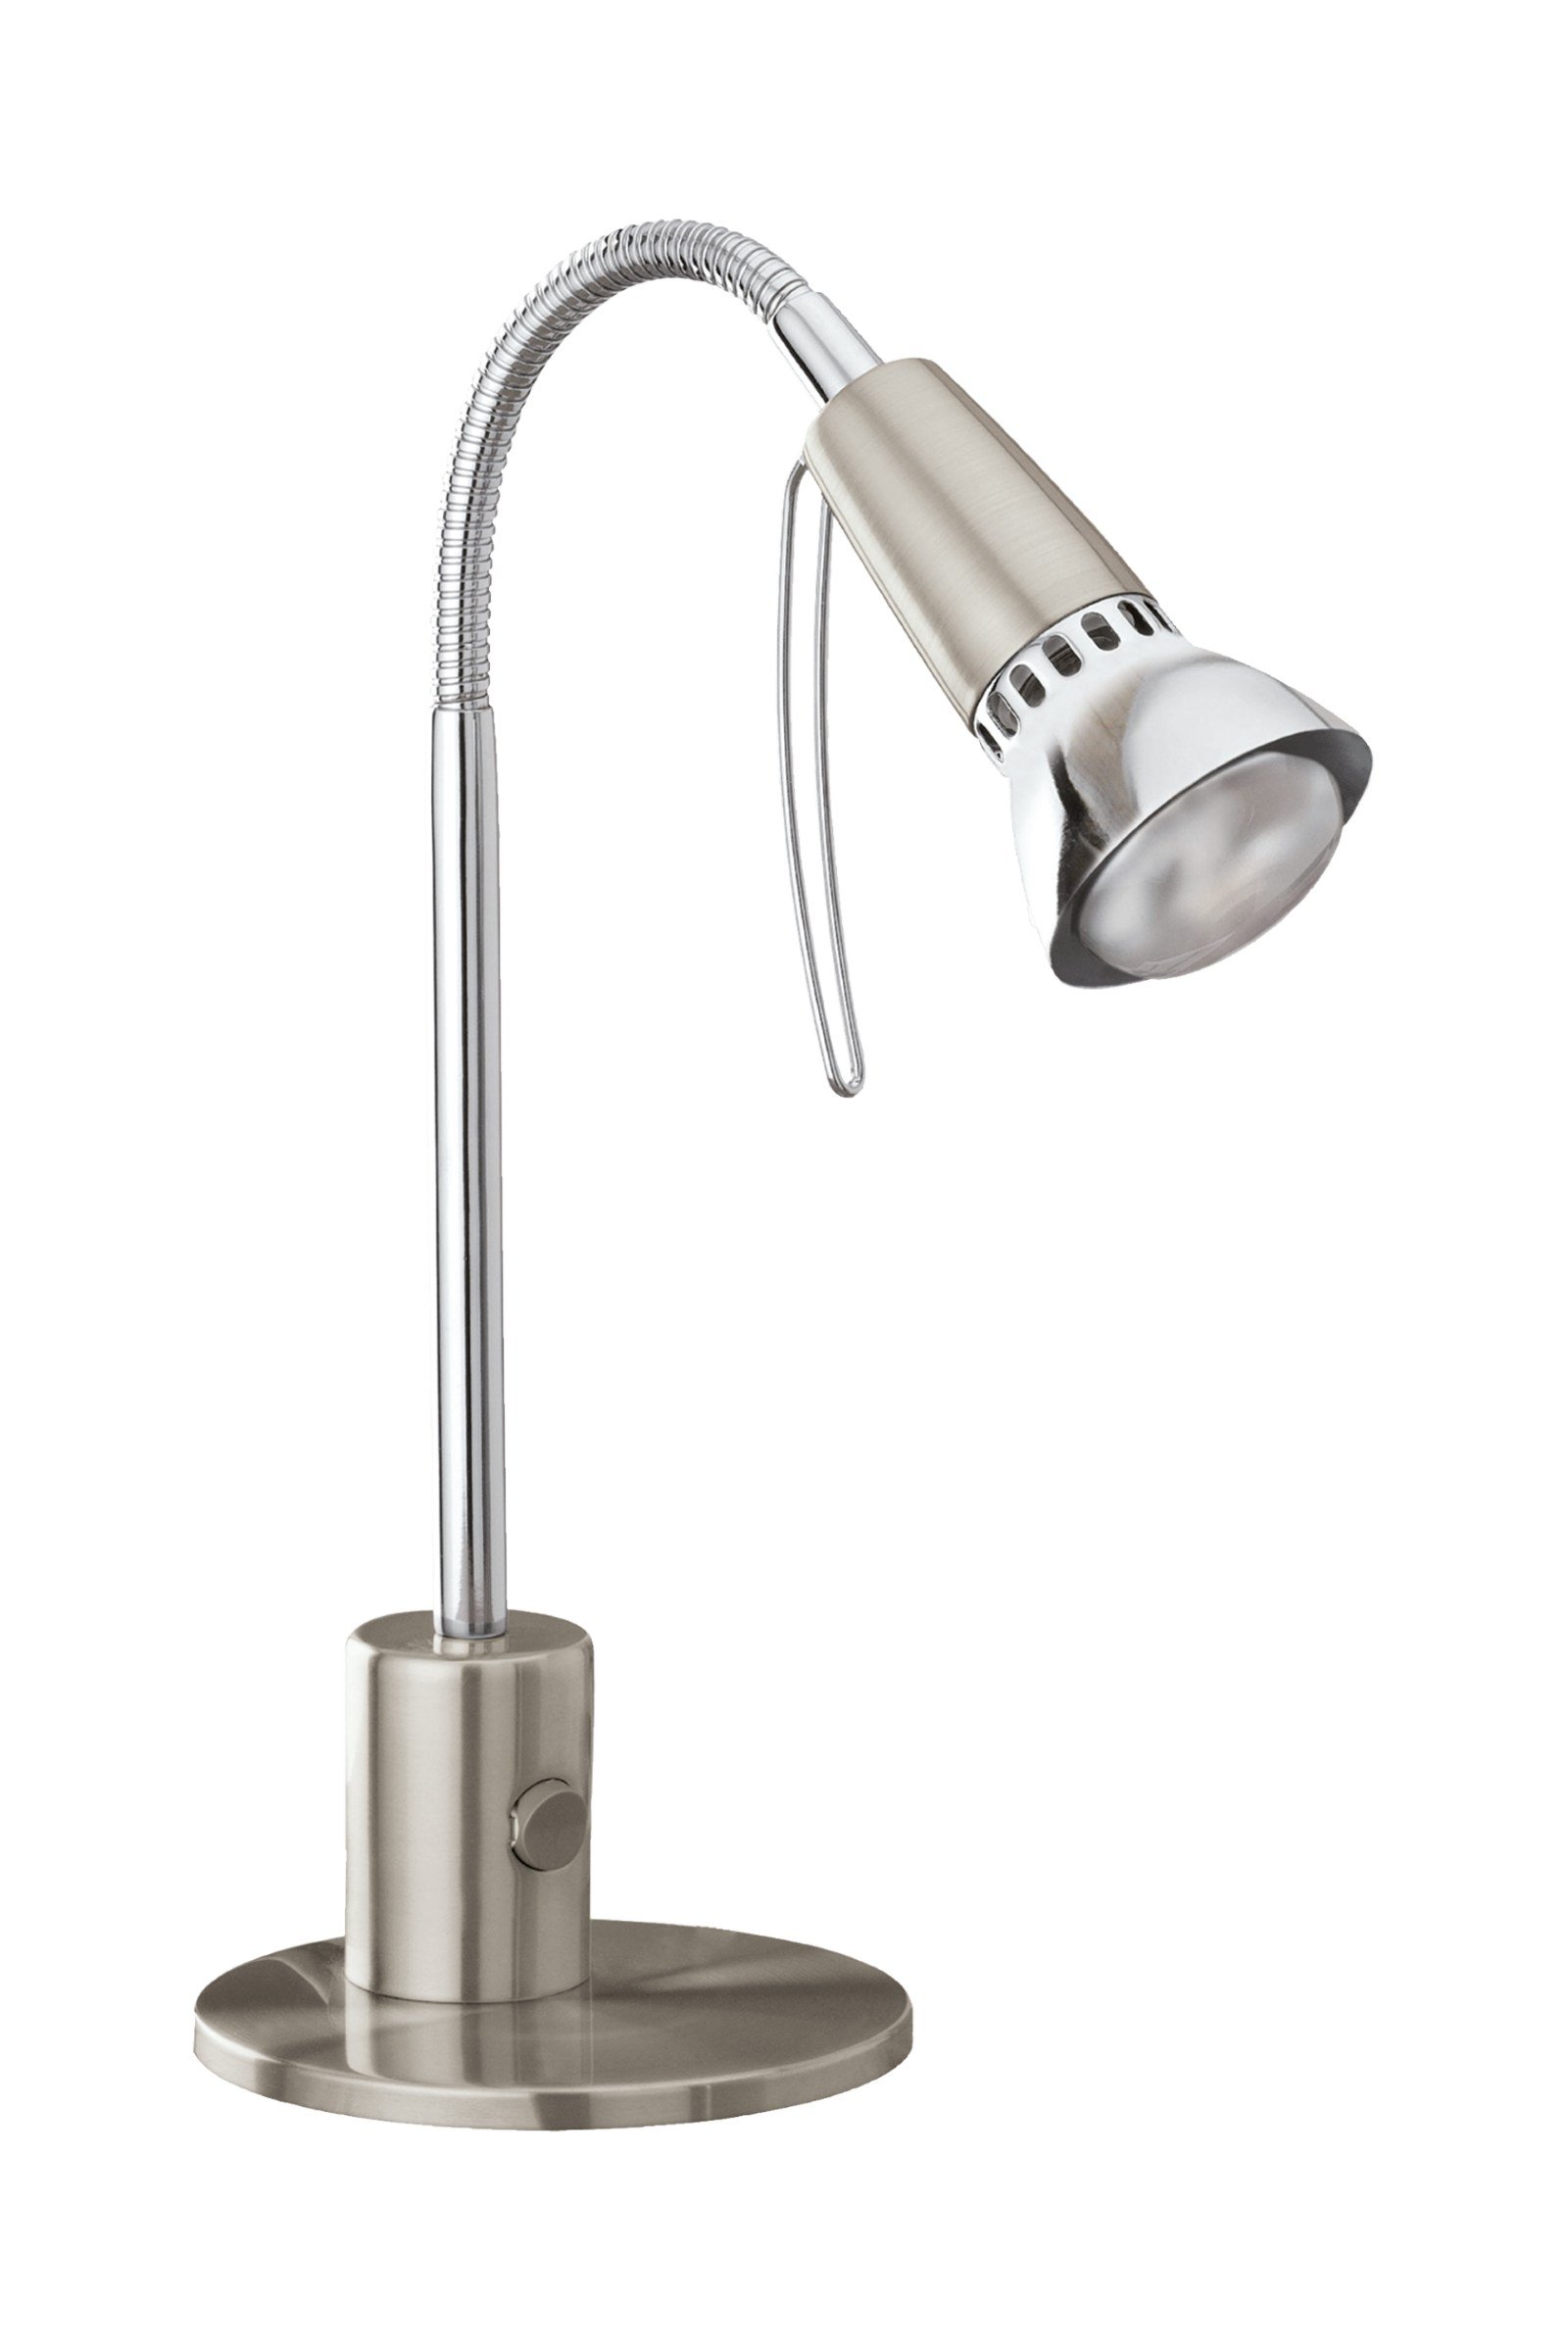   
                        Настільна лампа EGLO (Австрія) 35917    
                         у стилі хай-тек.  
                        Тип джерела світла: cвітлодіодні led, енергозберігаючі, розжарювання.                                                 Кольори плафонів і підвісок: сірий.                         Матеріал: сталь.                          фото 1